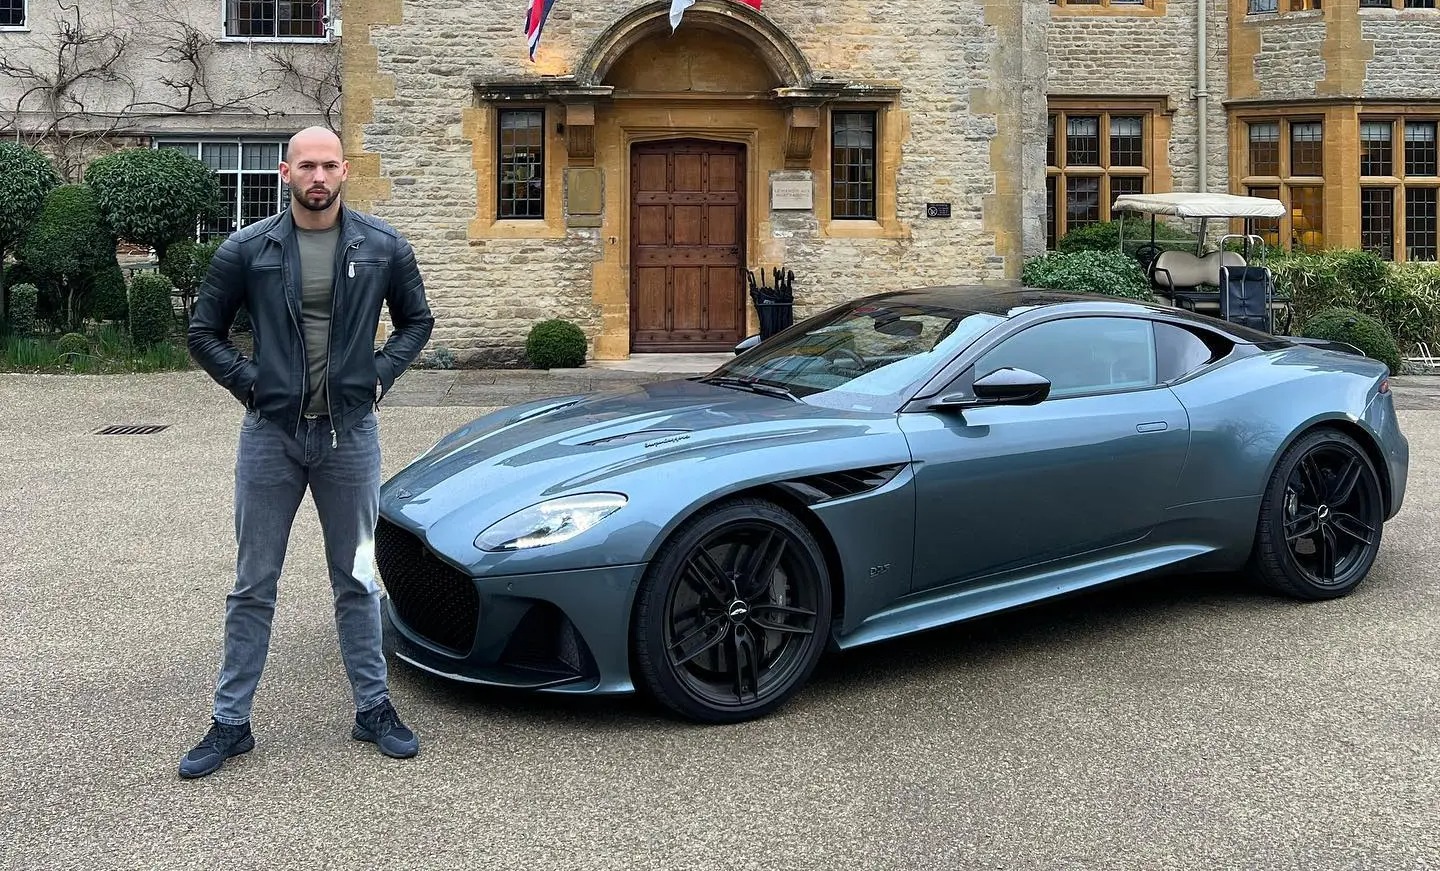 Tate im Bild mit einem weiteren Supersportwagen von Aston Martin